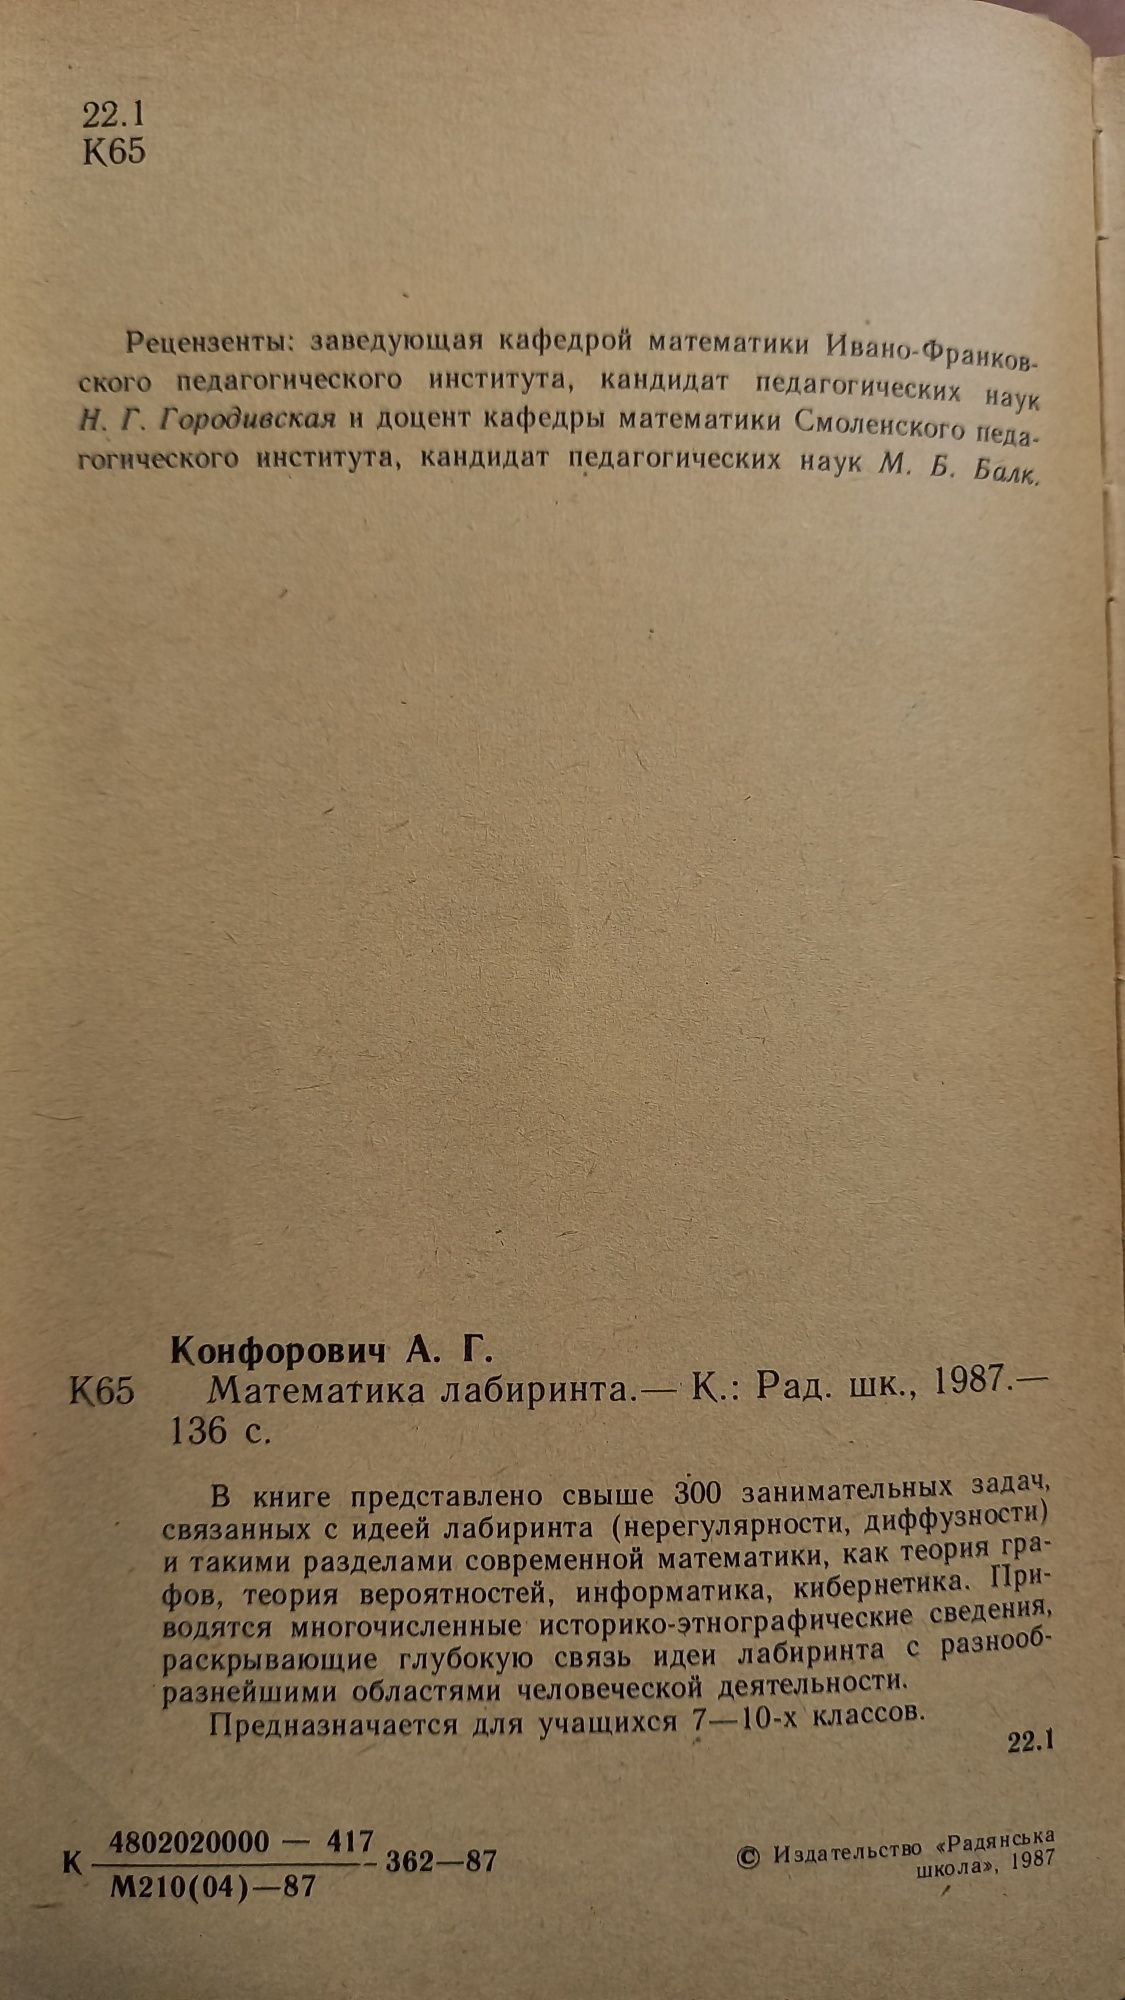 Математика лабиринта, А.Г.Конфорович